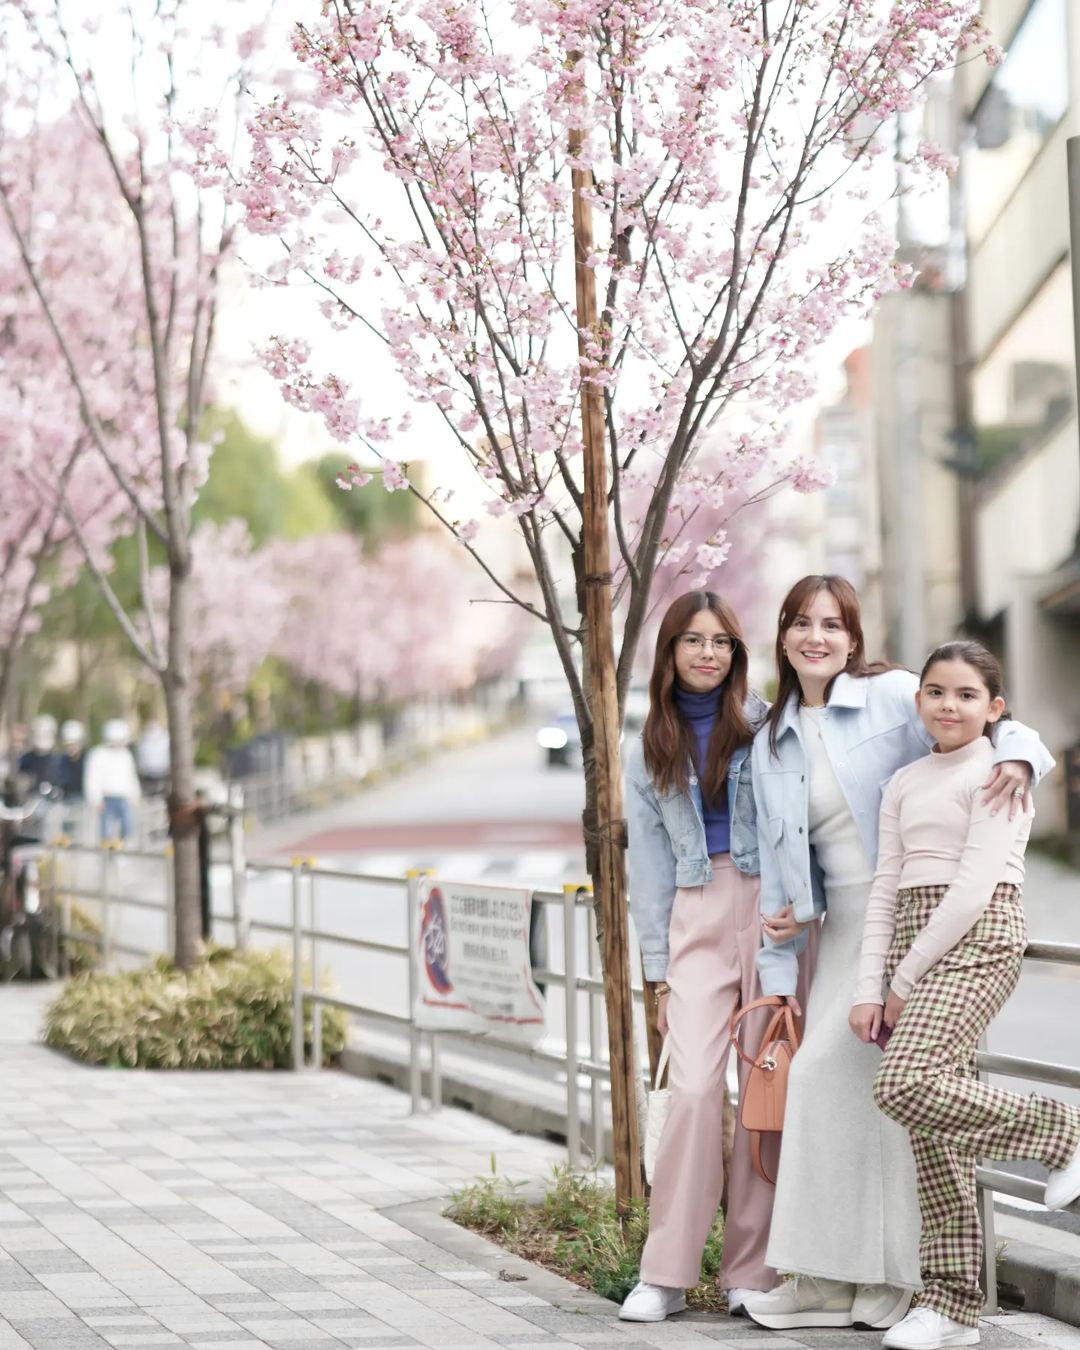 chesca kramer kendra kramer scarlett kramer in japan cherry blossom outfits